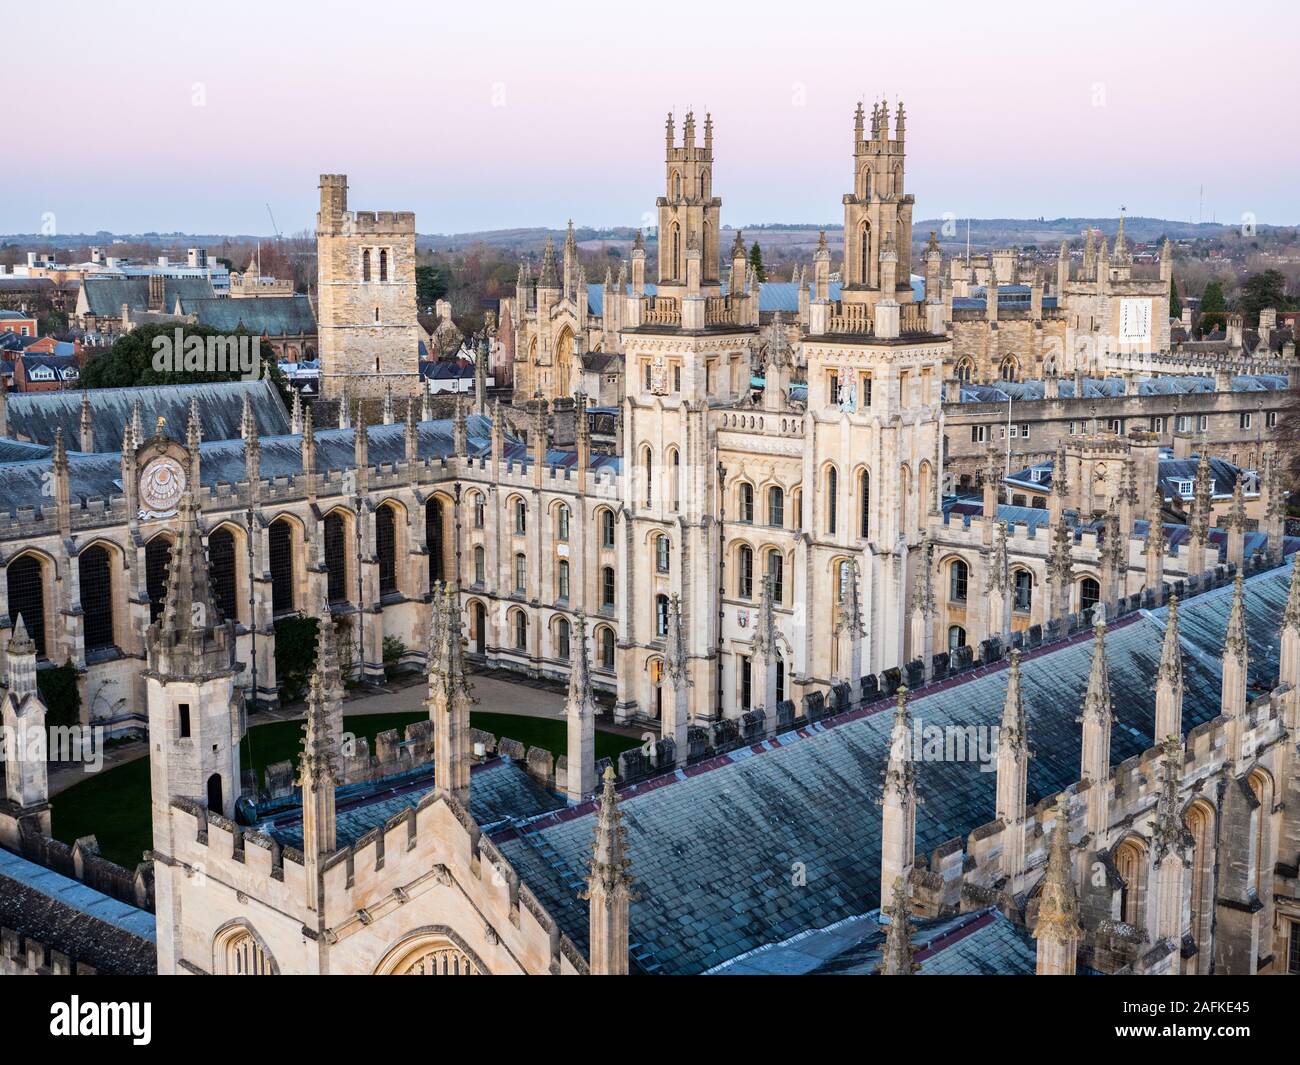 All Souls College, di notte, Università di Oxford, Oxfordshire, England, Regno Unito, GB. Foto Stock